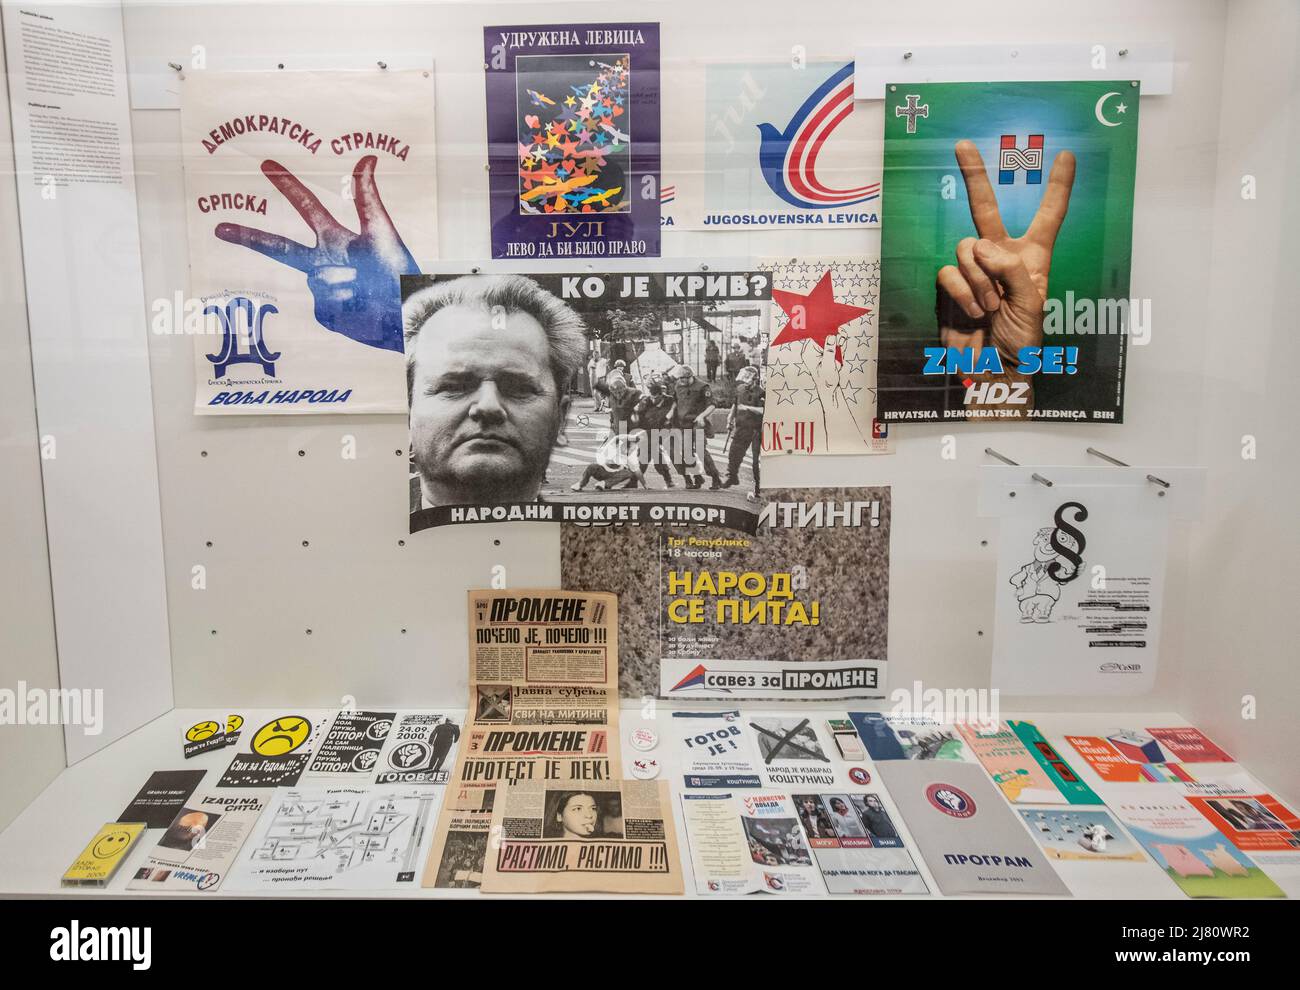 Manifesti politici delle elezioni in Jugoslavia nel 90s. Museo della Jugoslavia: Memorial Center - Josip Broz Tito Fund. Foto Stock